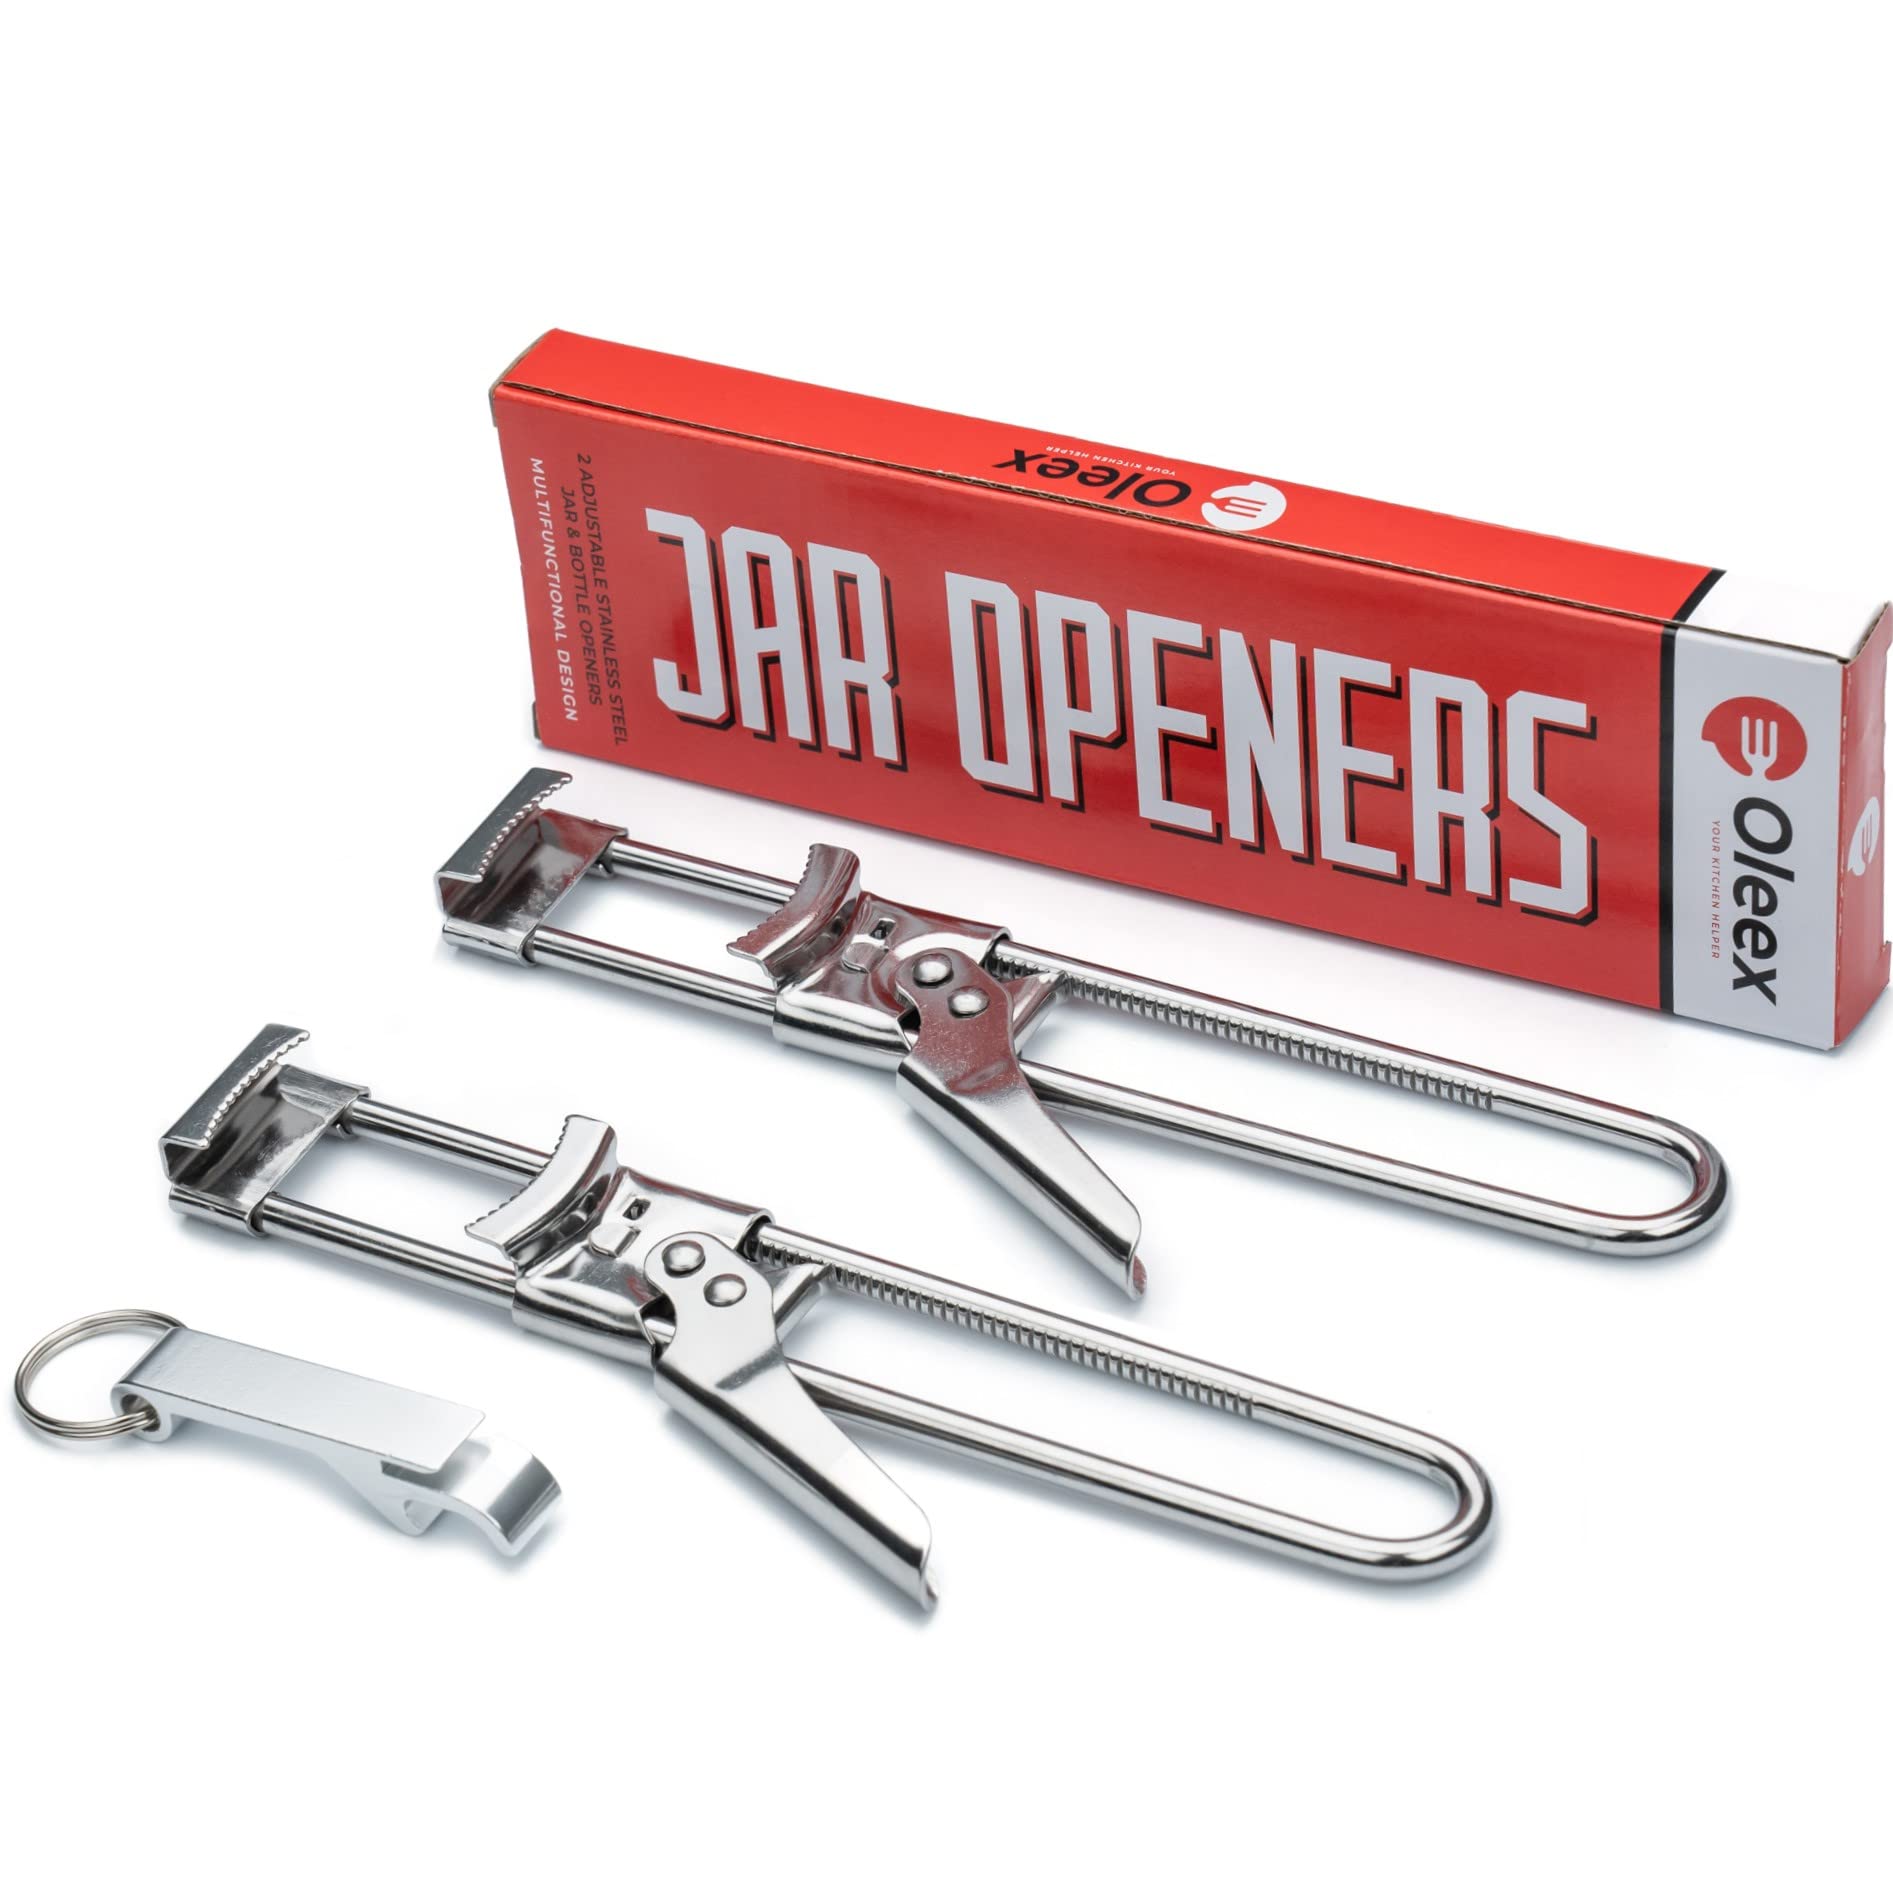 OLEEX YOUR KITCHEN H Oleex Jar Opener for Weak Hands (x2) with Keychain  Bottle Cap Opener.